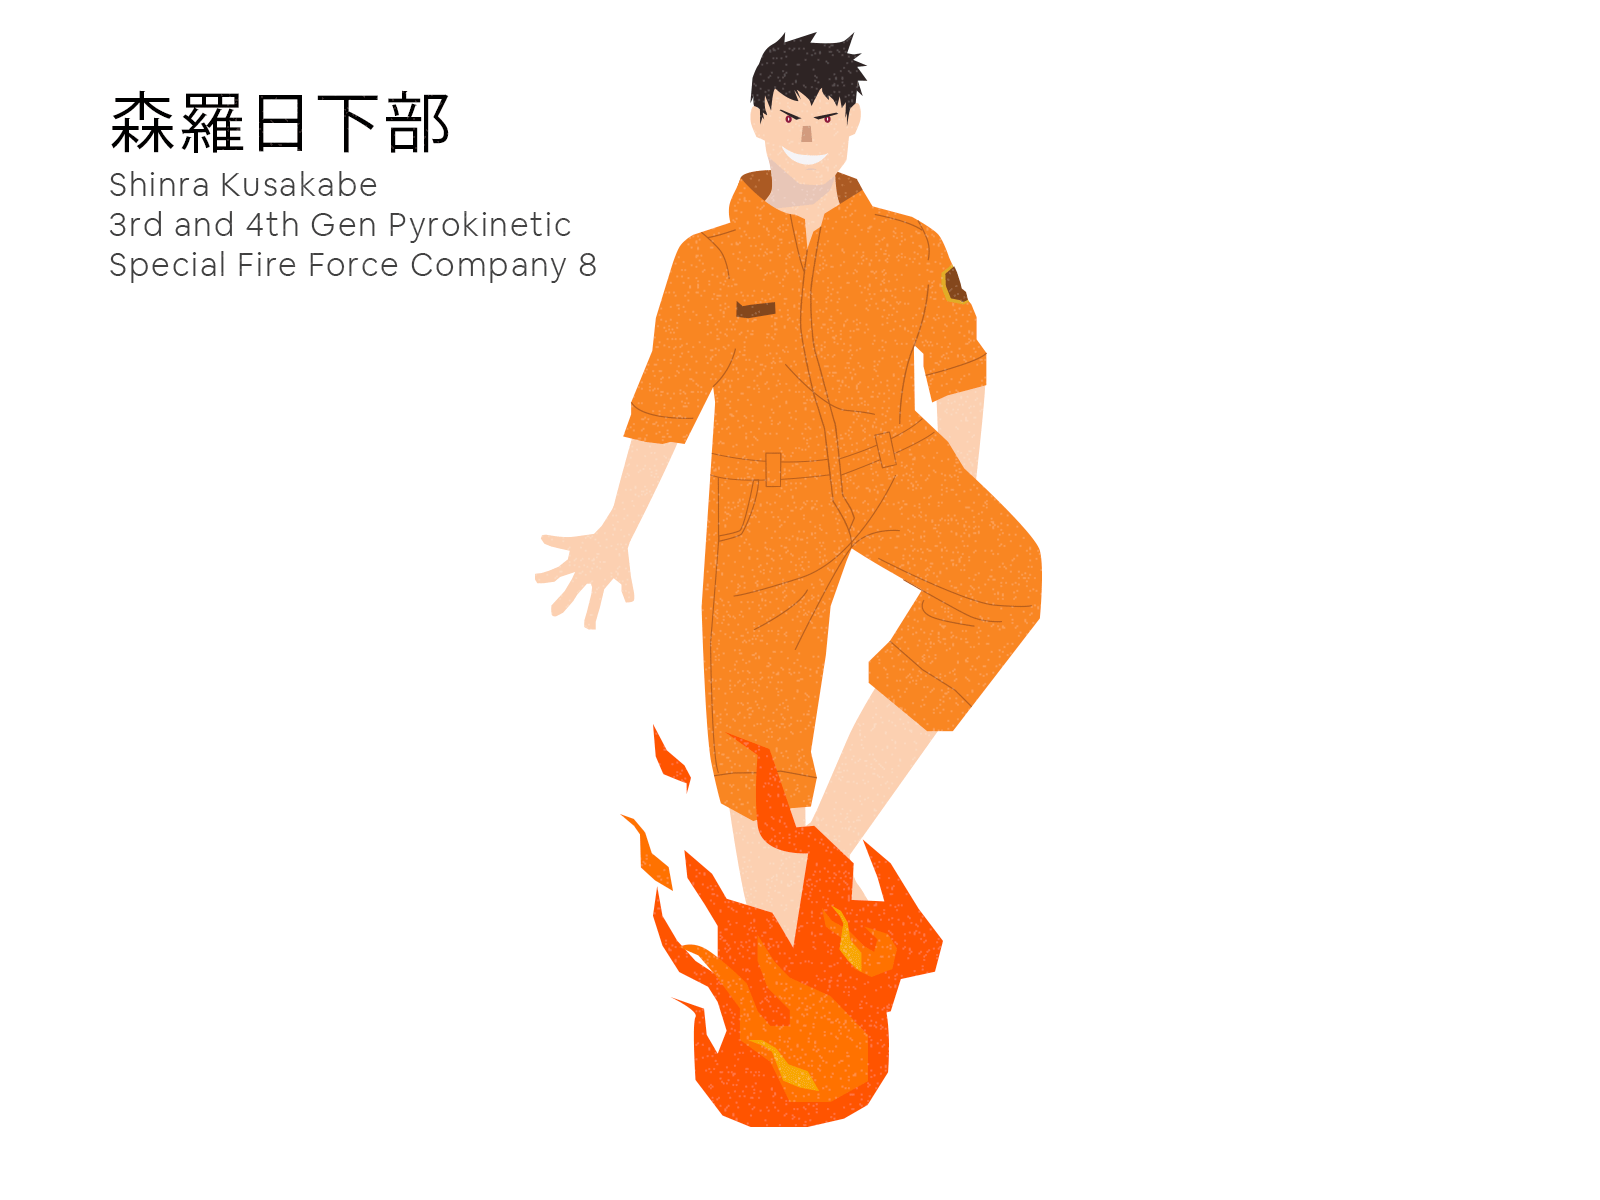 Shinra Fanart animated gif animation anime fire force illustration kusakabe shinra